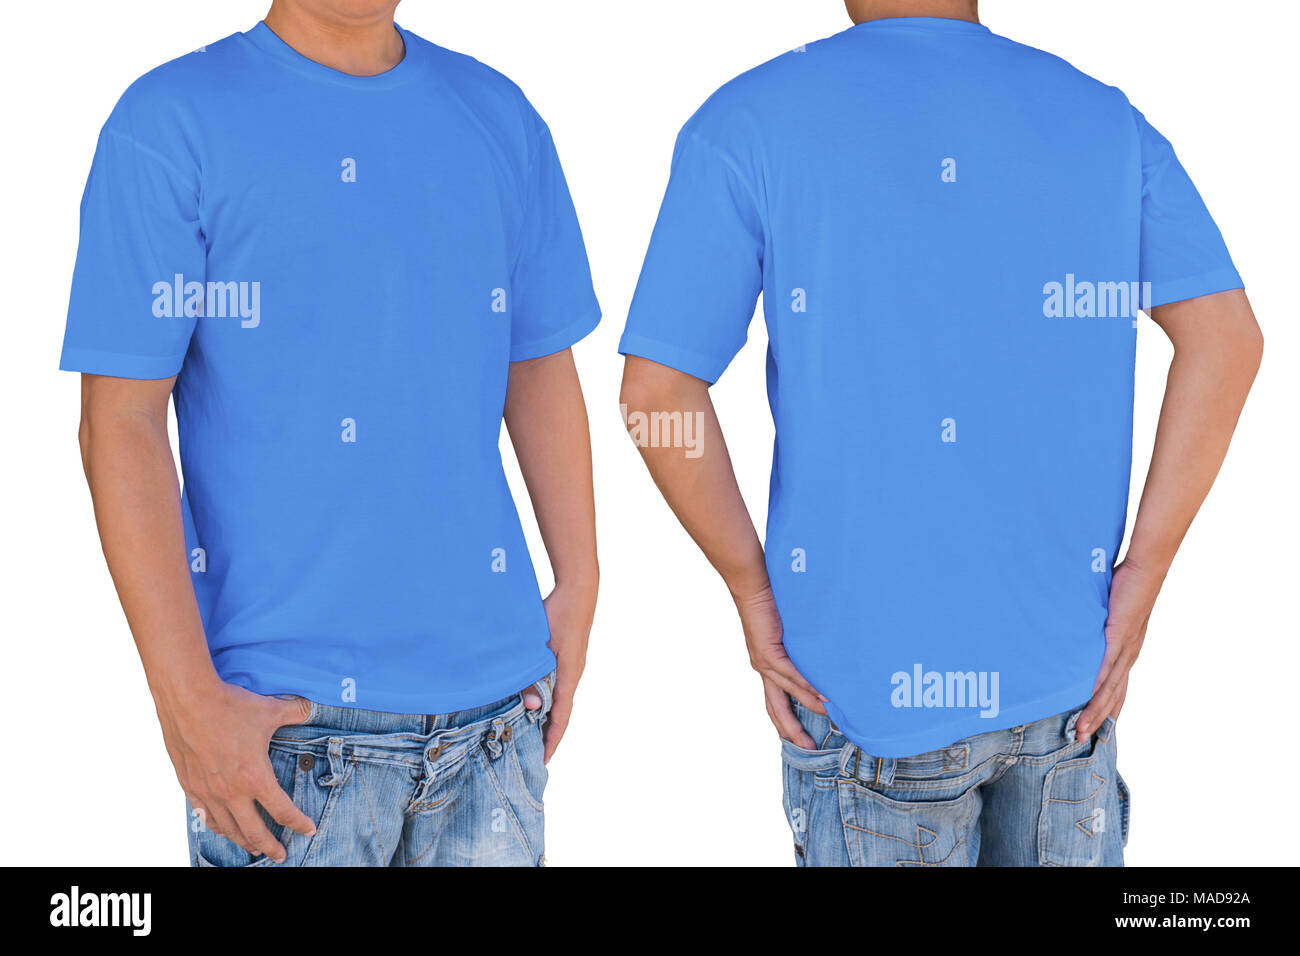 El hombre vestido de azul en blanco camiseta con trazado de recorte, vista frontal y posterior. Plantilla para insertar logo, patrón o ilustraciones. Foto de stock